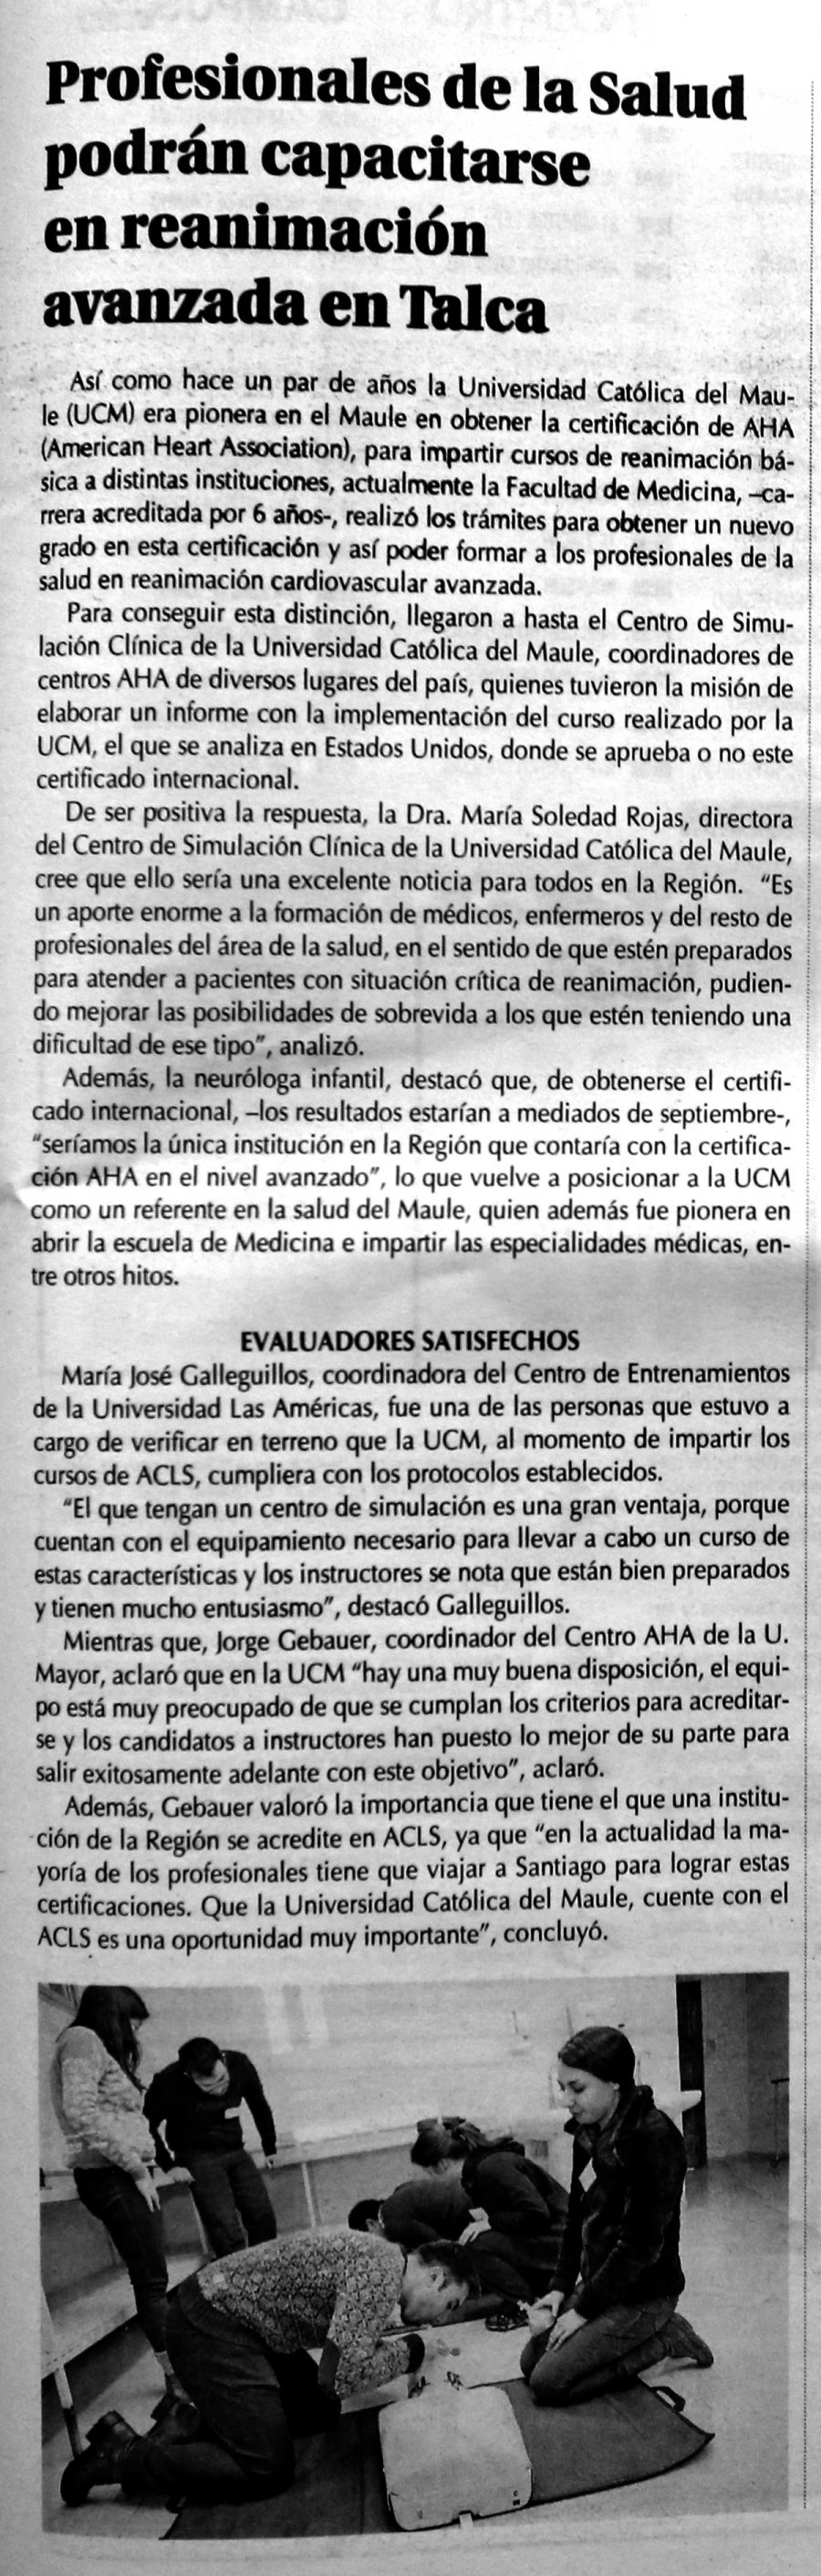 06 de agosto en Diario El Centro: “Profesionales de la salud podrán capacitarse en reanimación en Talca”